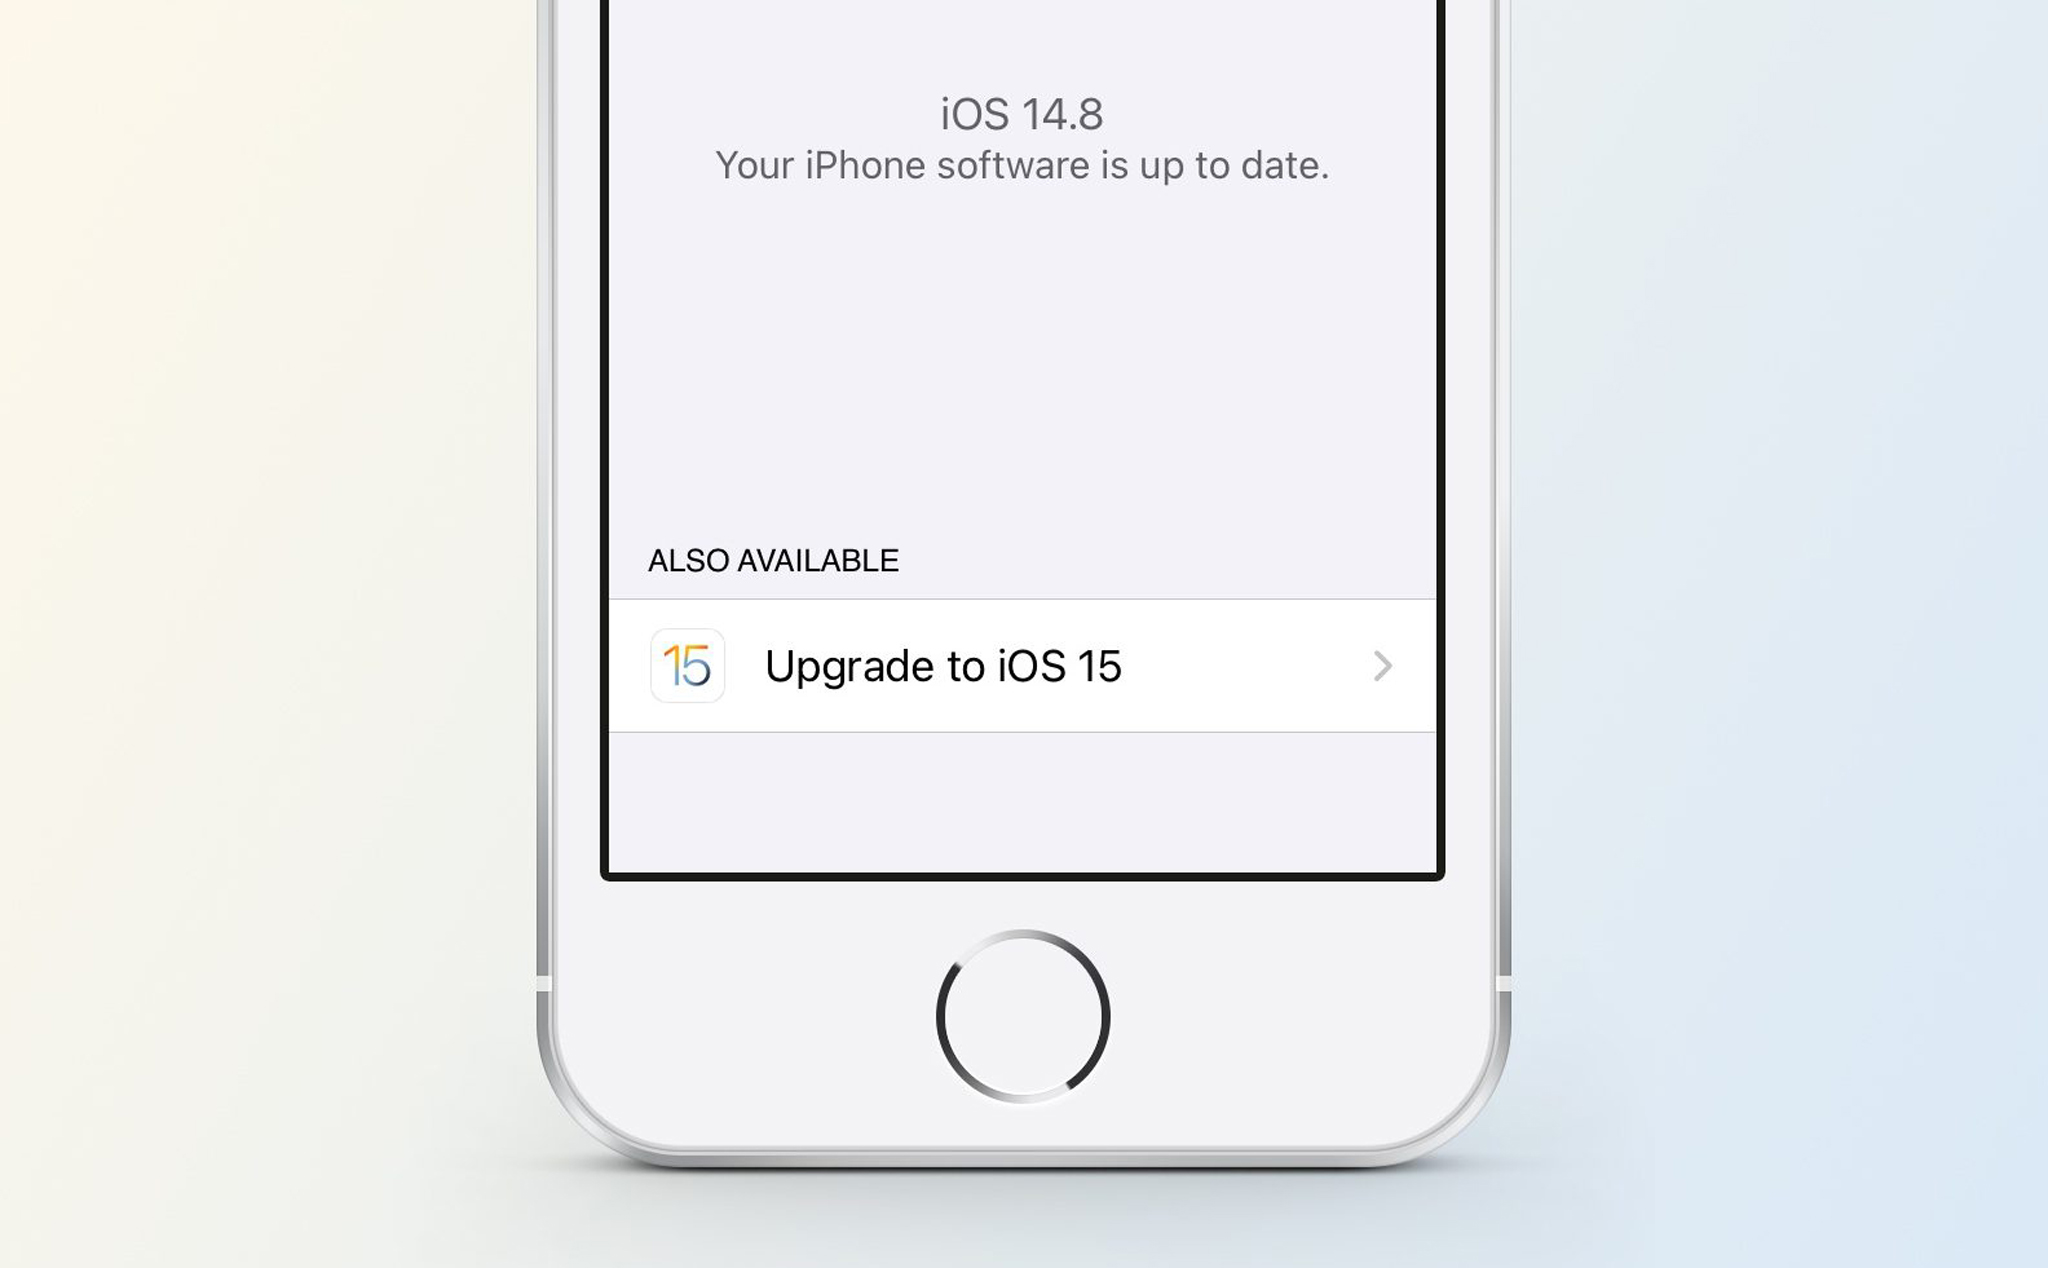 Cách giữ iPhone ở lại iOS 14 và chỉ nhận bản cập nhật bảo mật